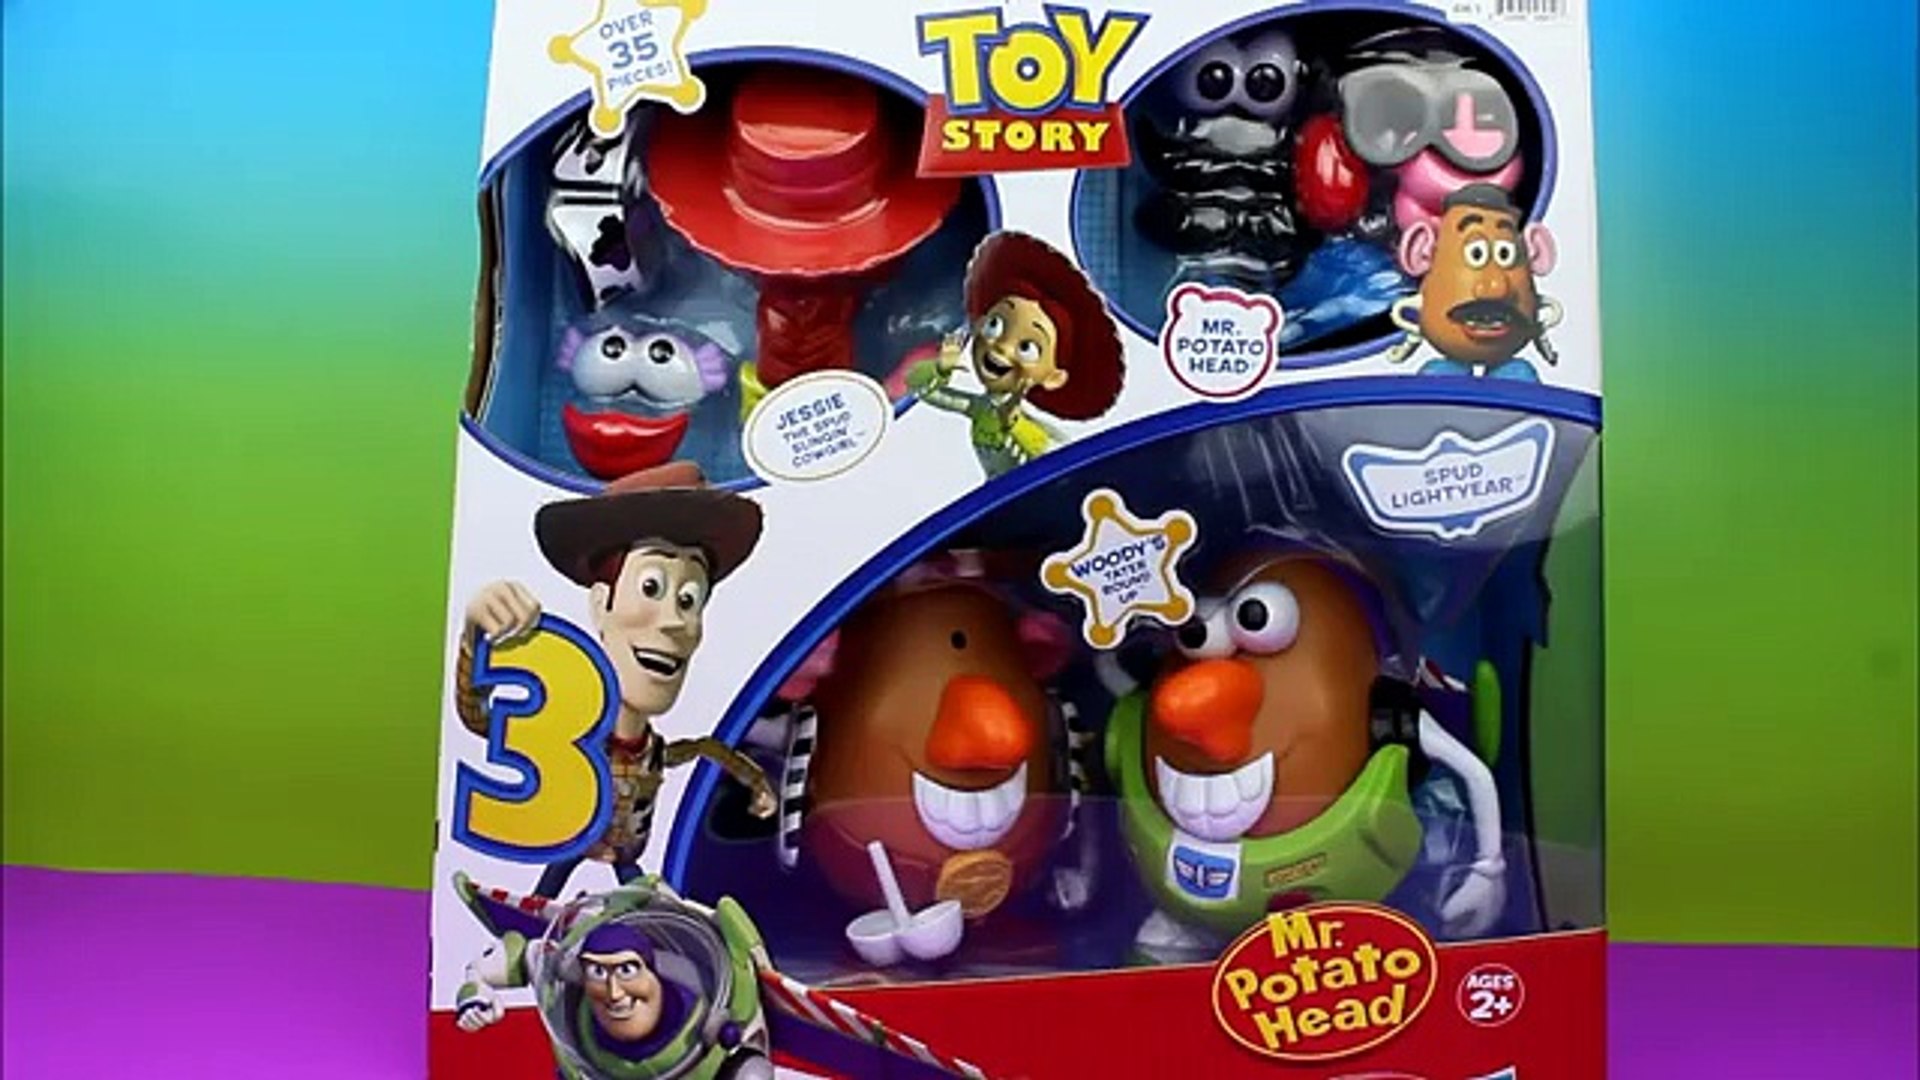 Mr Potato Head Disney Pixar Toy Story 4 Spud Lightyear Figure Toy Buzz